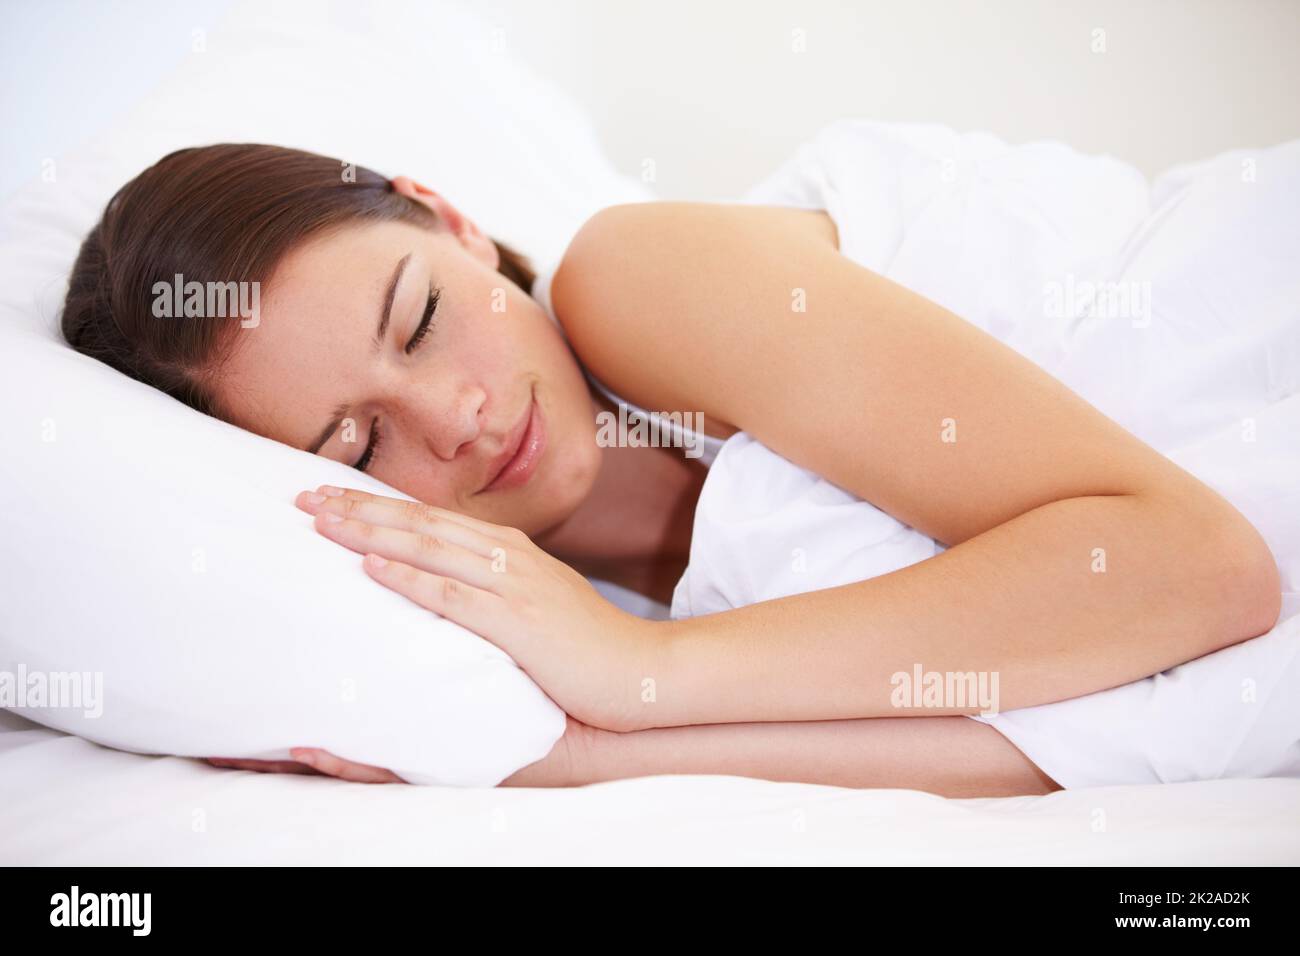 Dormire bellezza. Una giovane donna si addormentò velocemente. Foto Stock